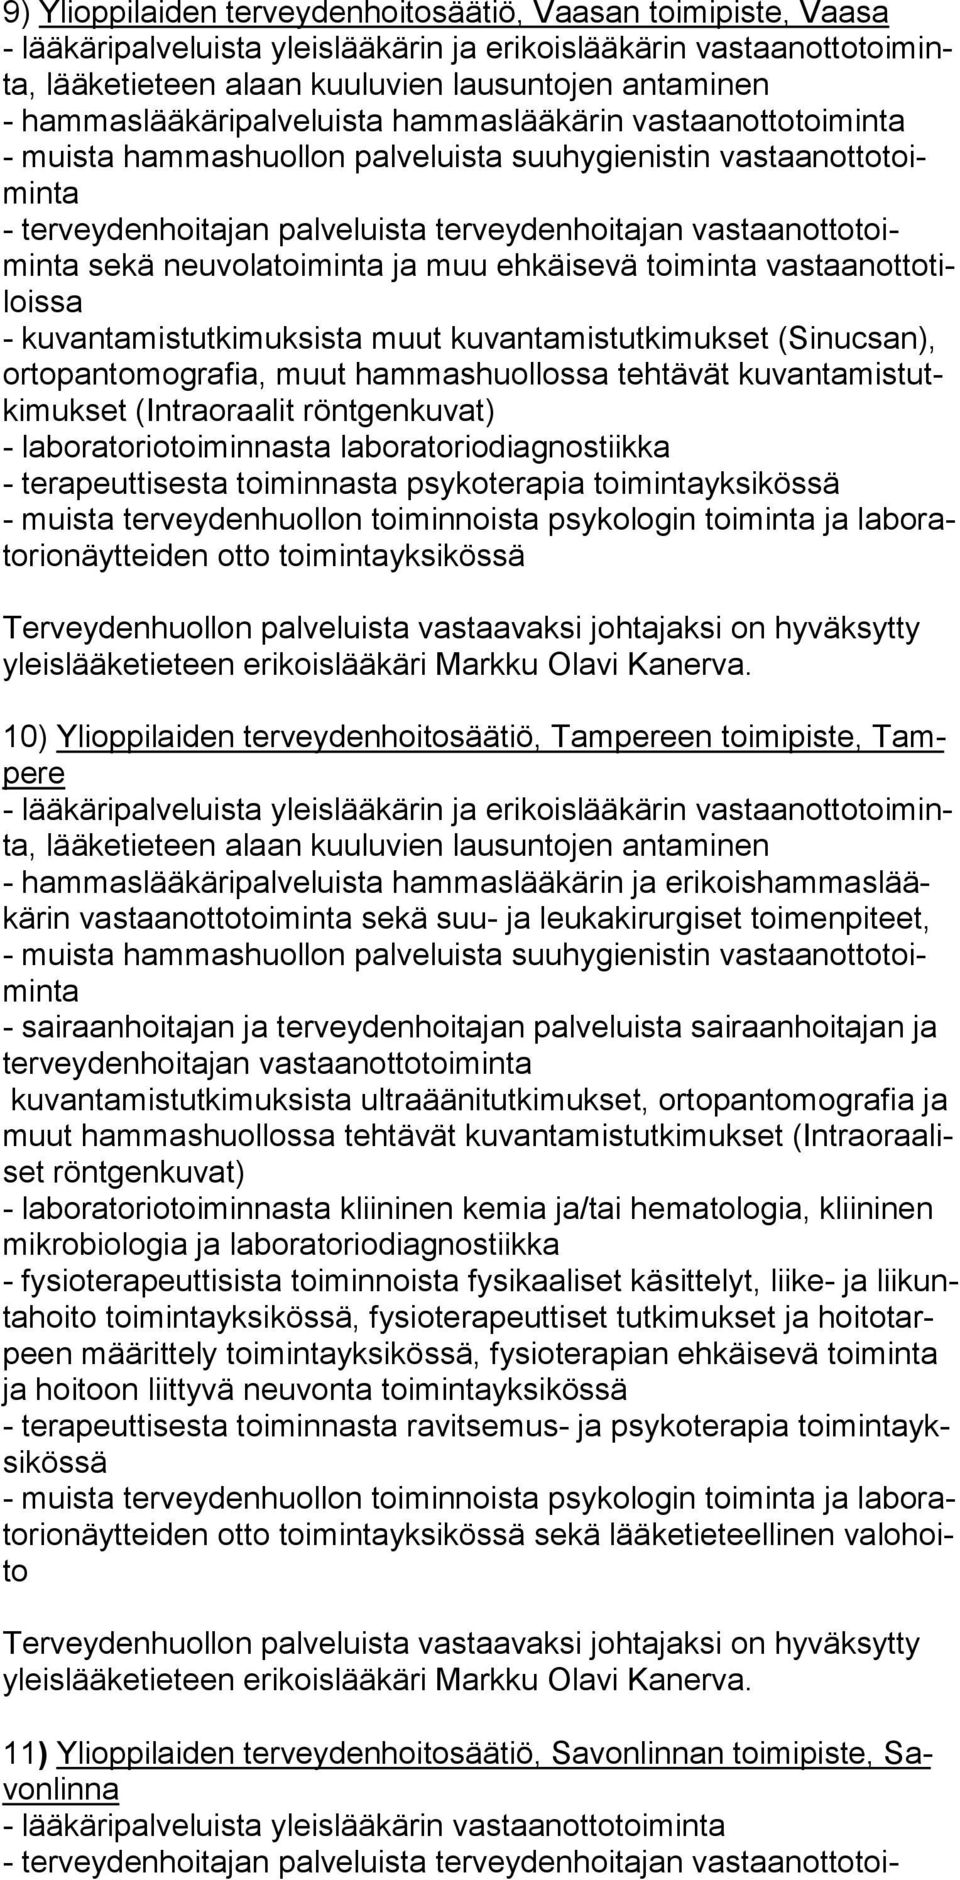 terveydenhoitosäätiö, Tampereen toimipiste, Tampere - lääkäripalveluista yleislääkärin ja erikoislääkärin vastaanottotoi minta, lääketieteen alaan kuuluvien lau suntojen antaminen -